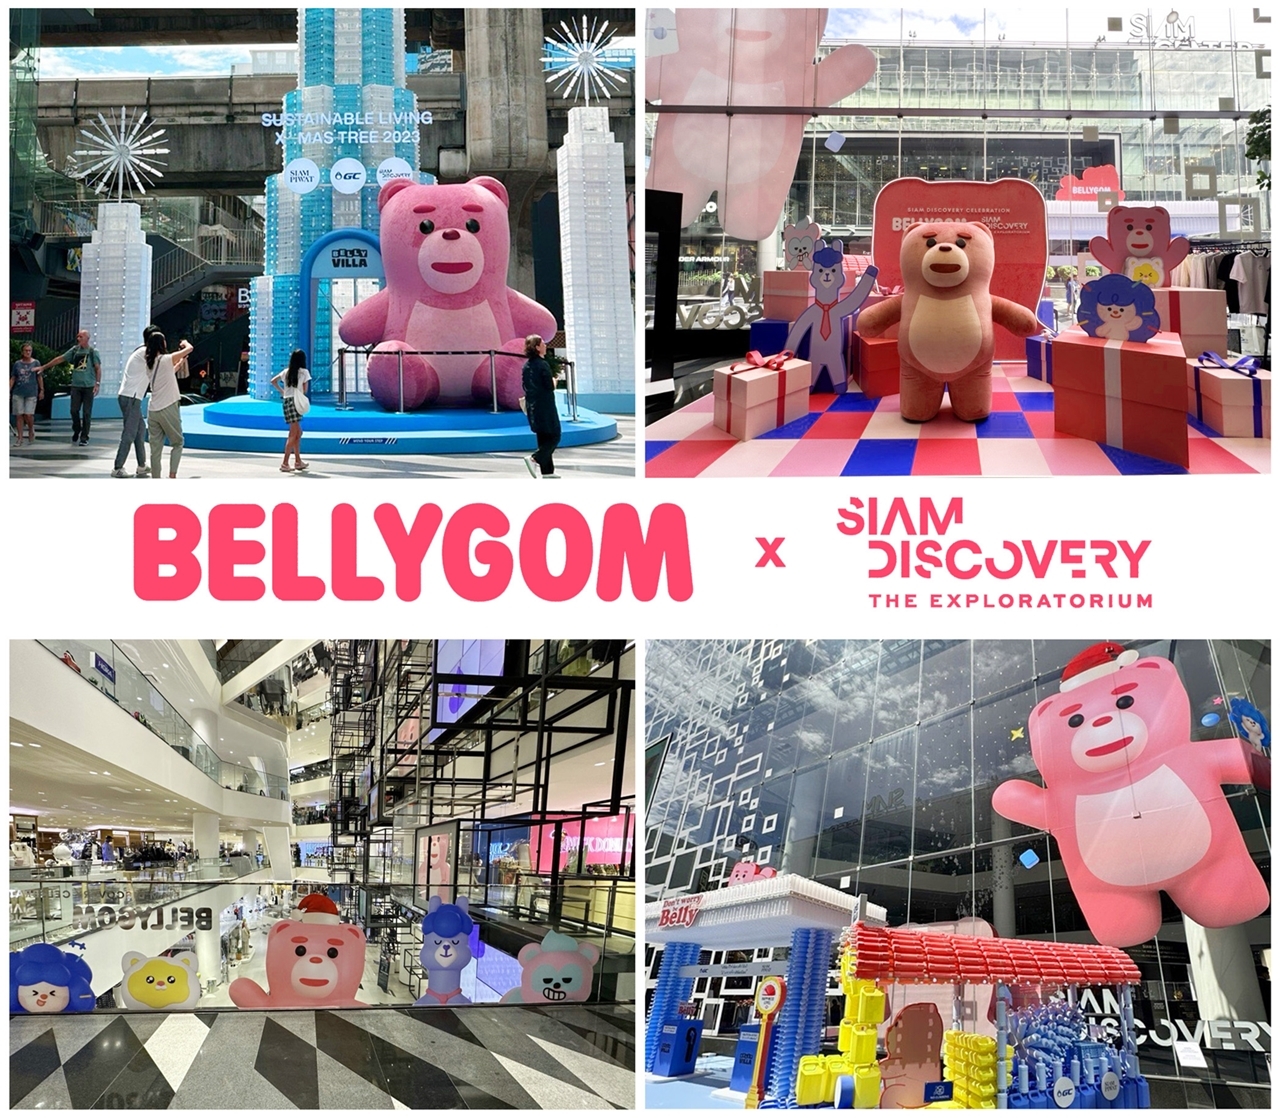 [생활경제 이슈] 롯데홈쇼핑, 태국 최대 쇼핑몰 ‘시암 디스커버리’서 벨리곰 특별전시 外